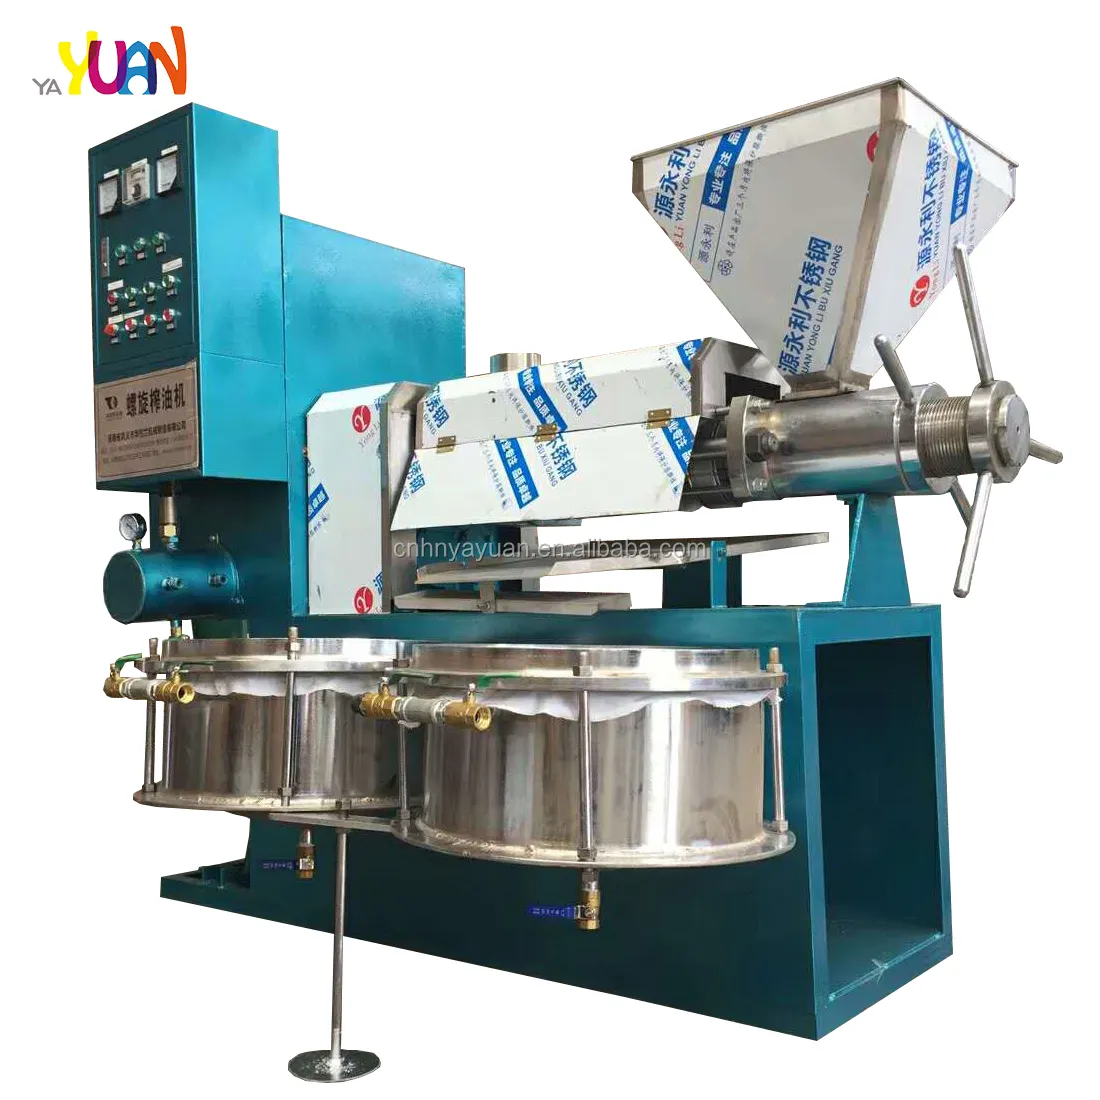 6YL-125 nuovo tipo di macchina della stampa dell'olio dei semi di arachidi ultima macchina della stampa di olio di cottura di alta efficienza